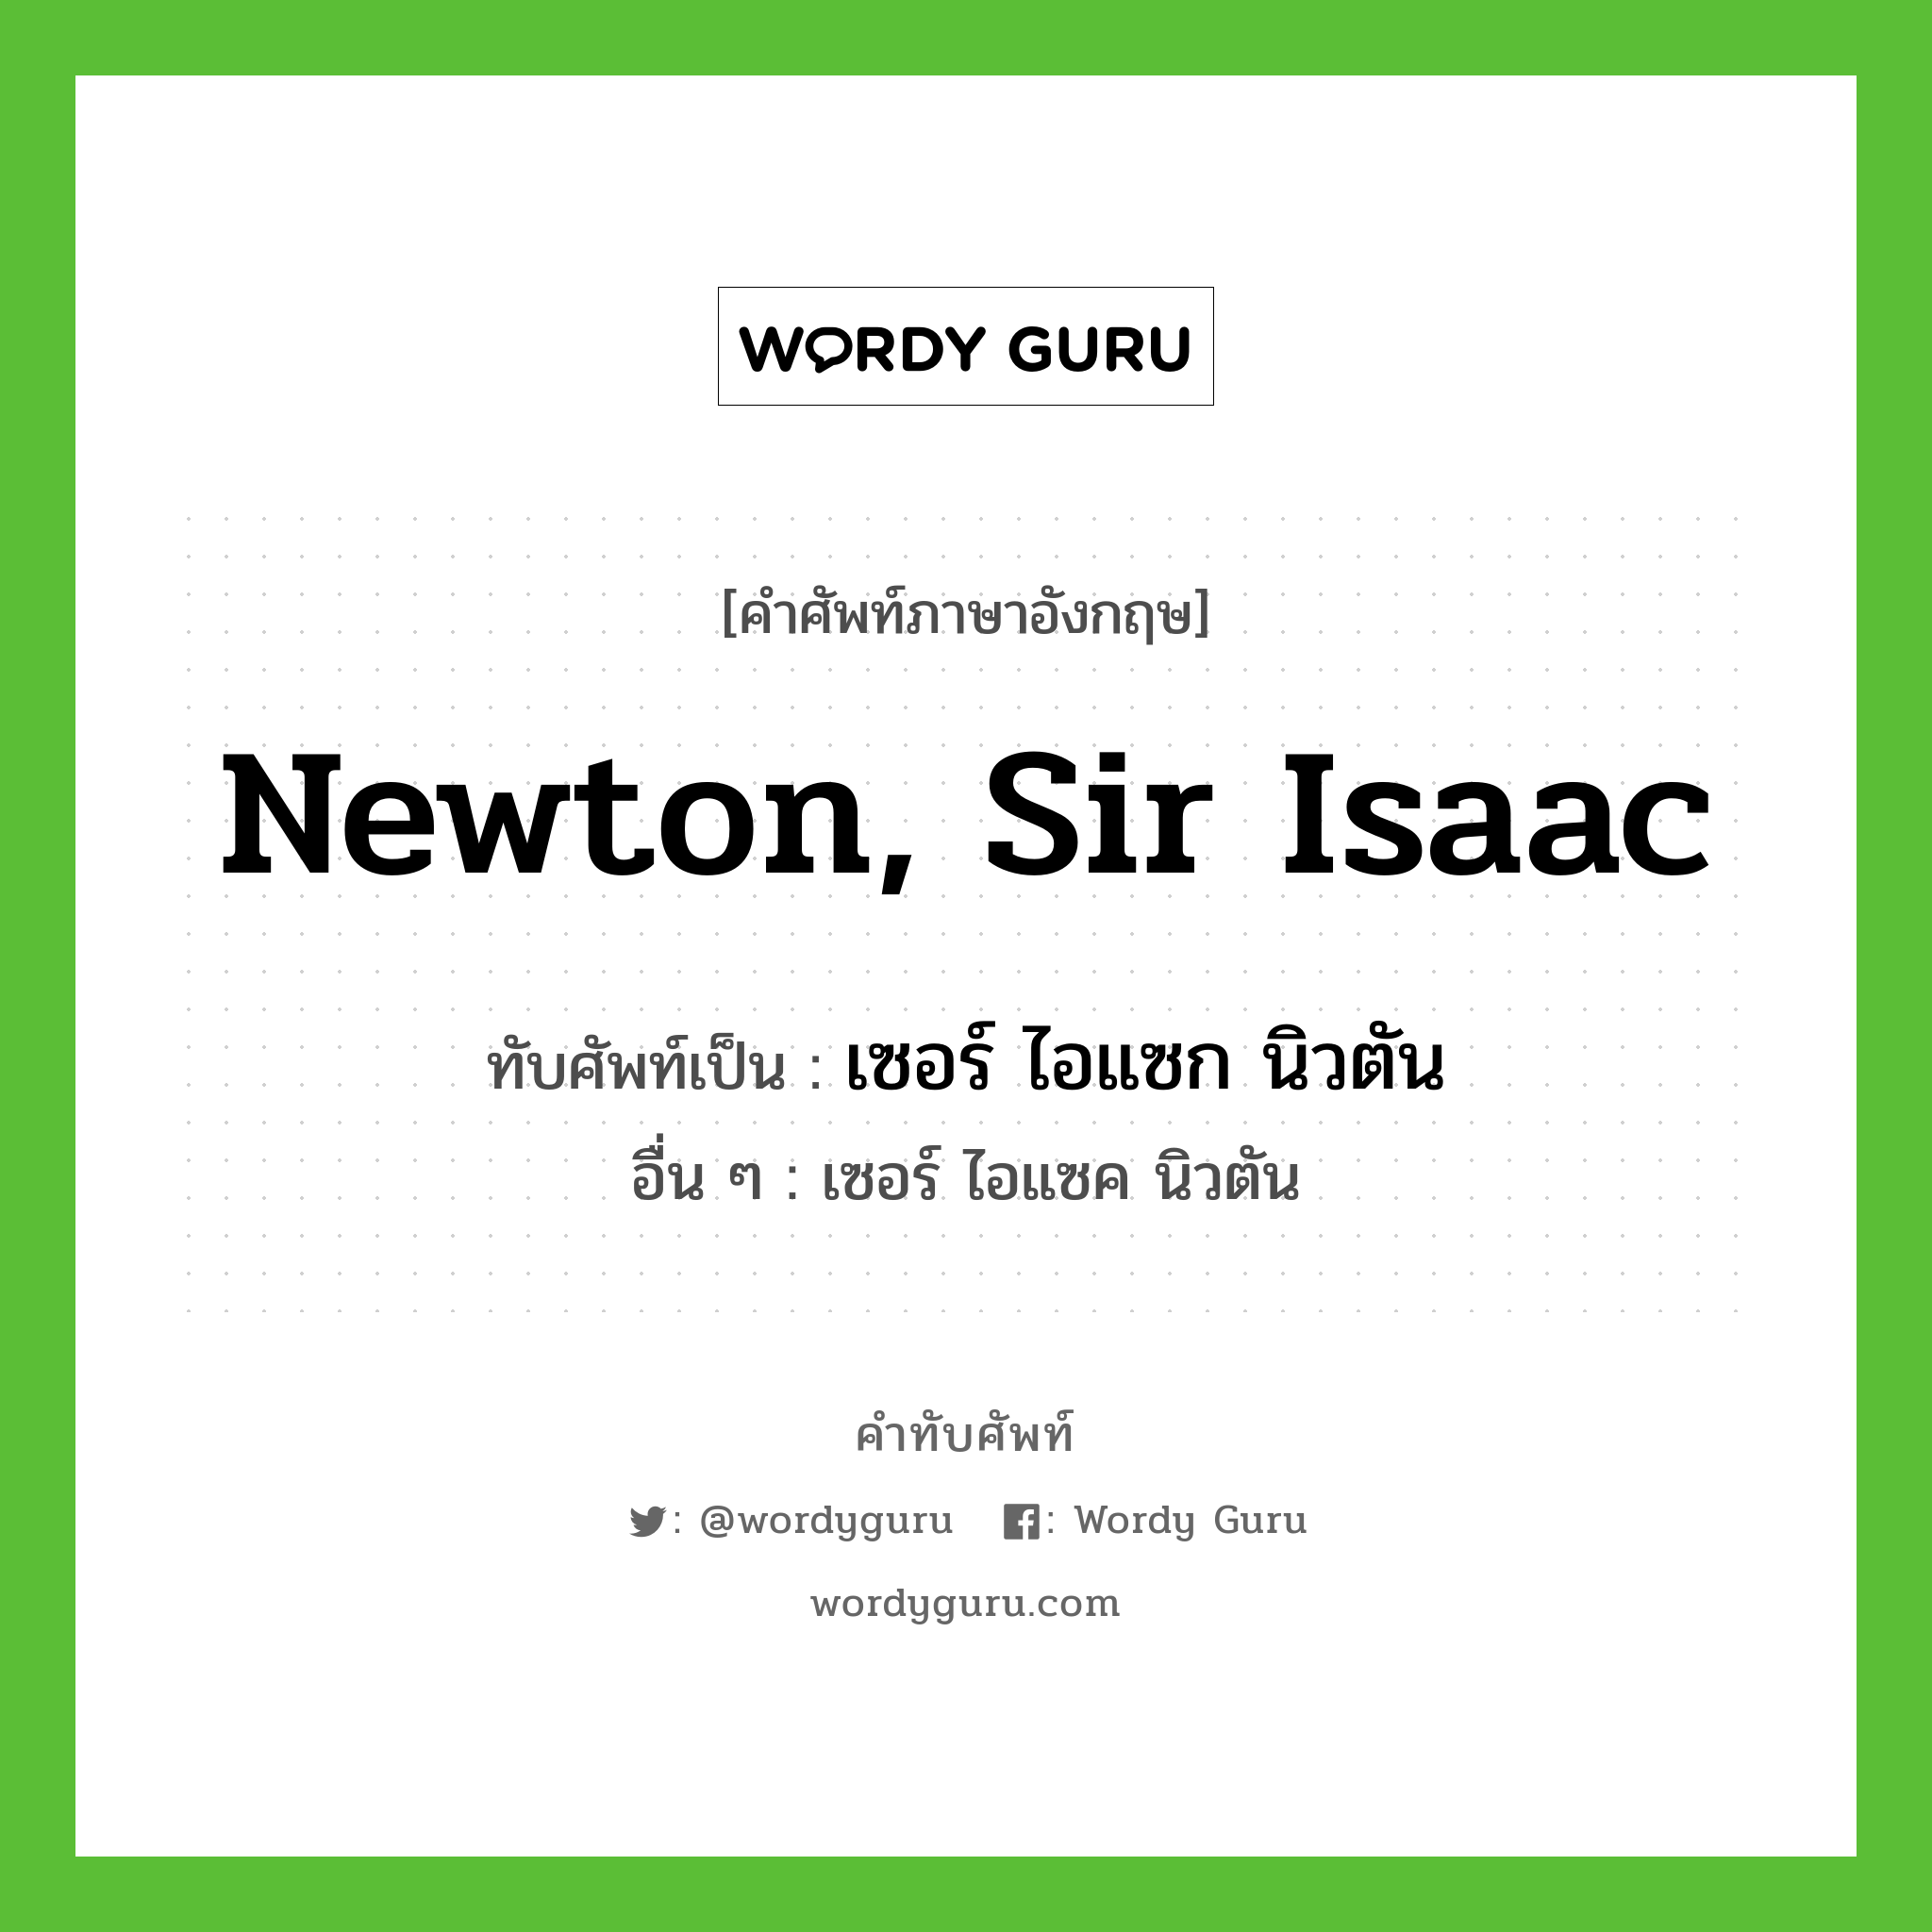 เซอร์ ไอแซก นิวตัน เขียนอย่างไร?, คำศัพท์ภาษาอังกฤษ เซอร์ ไอแซก นิวตัน ทับศัพท์เป็น Newton, Sir Isaac อื่น ๆ เซอร์ ไอแซค นิวตัน